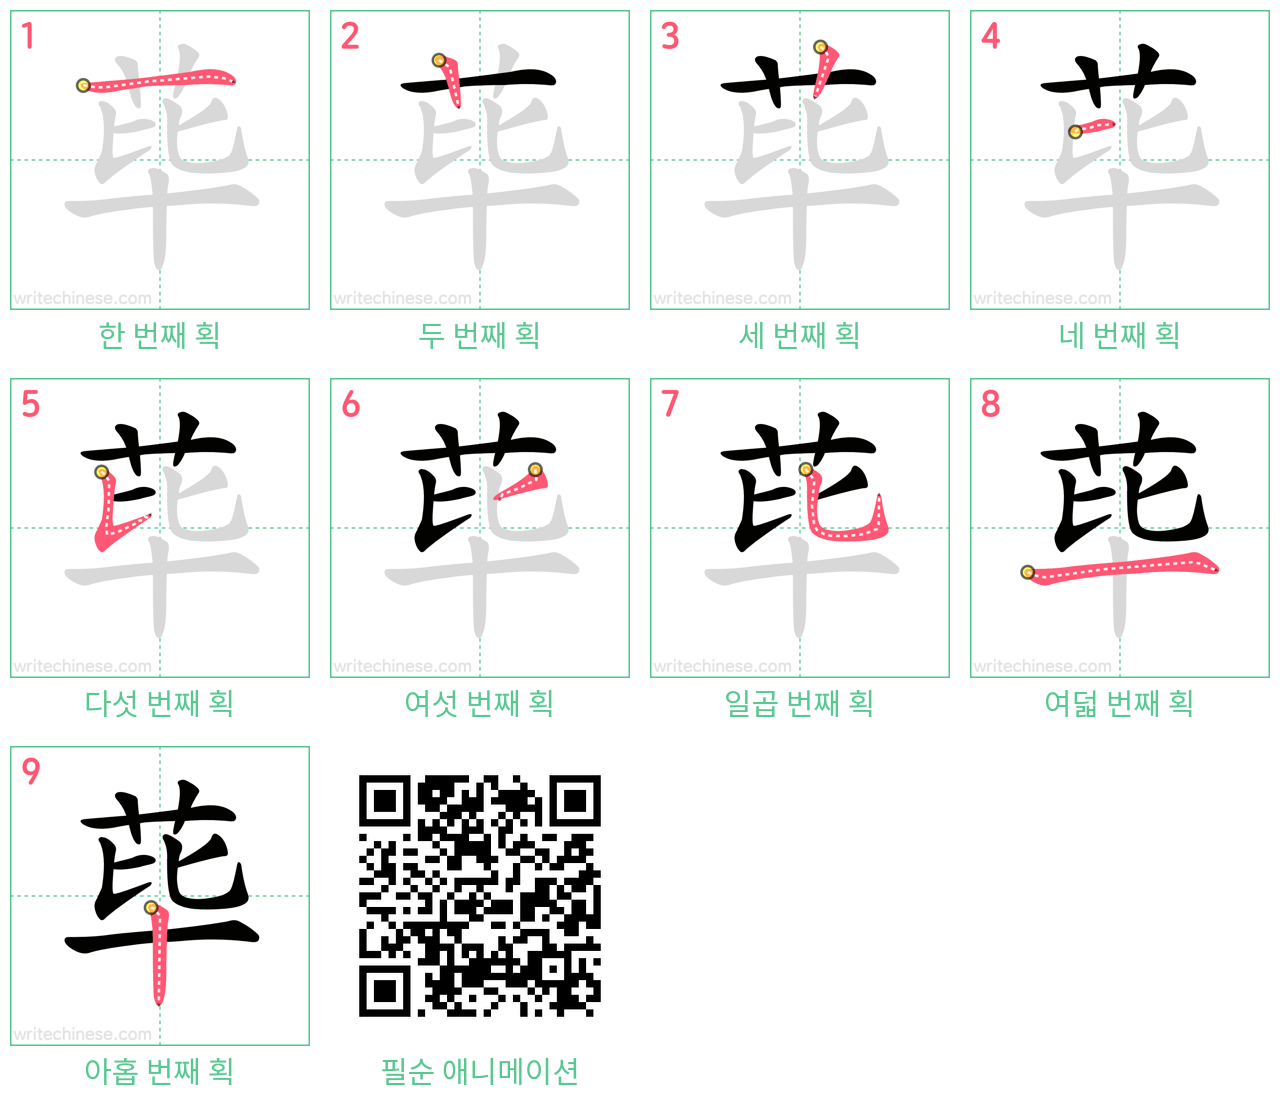 荜 step-by-step stroke order diagrams